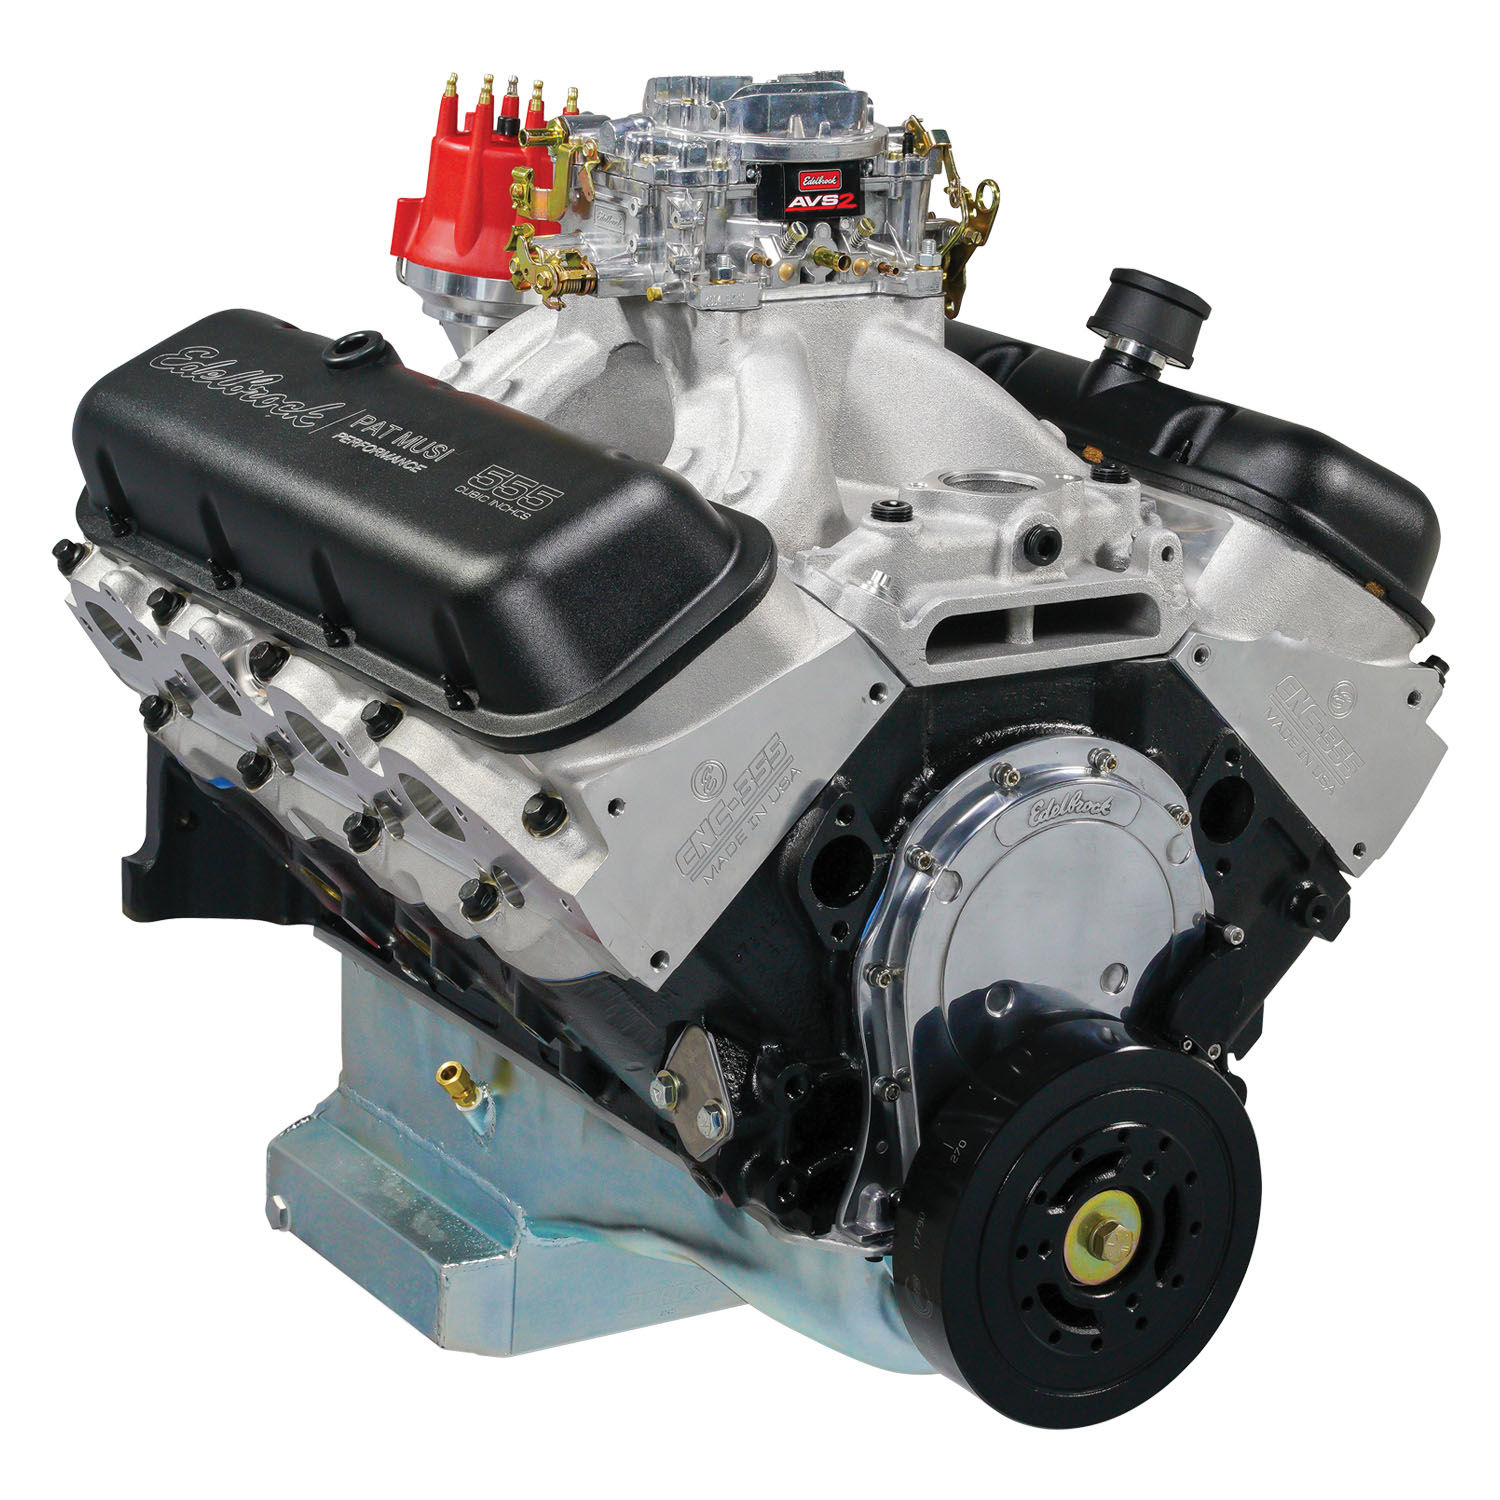 /Musi 555 carbureted Crate Engine